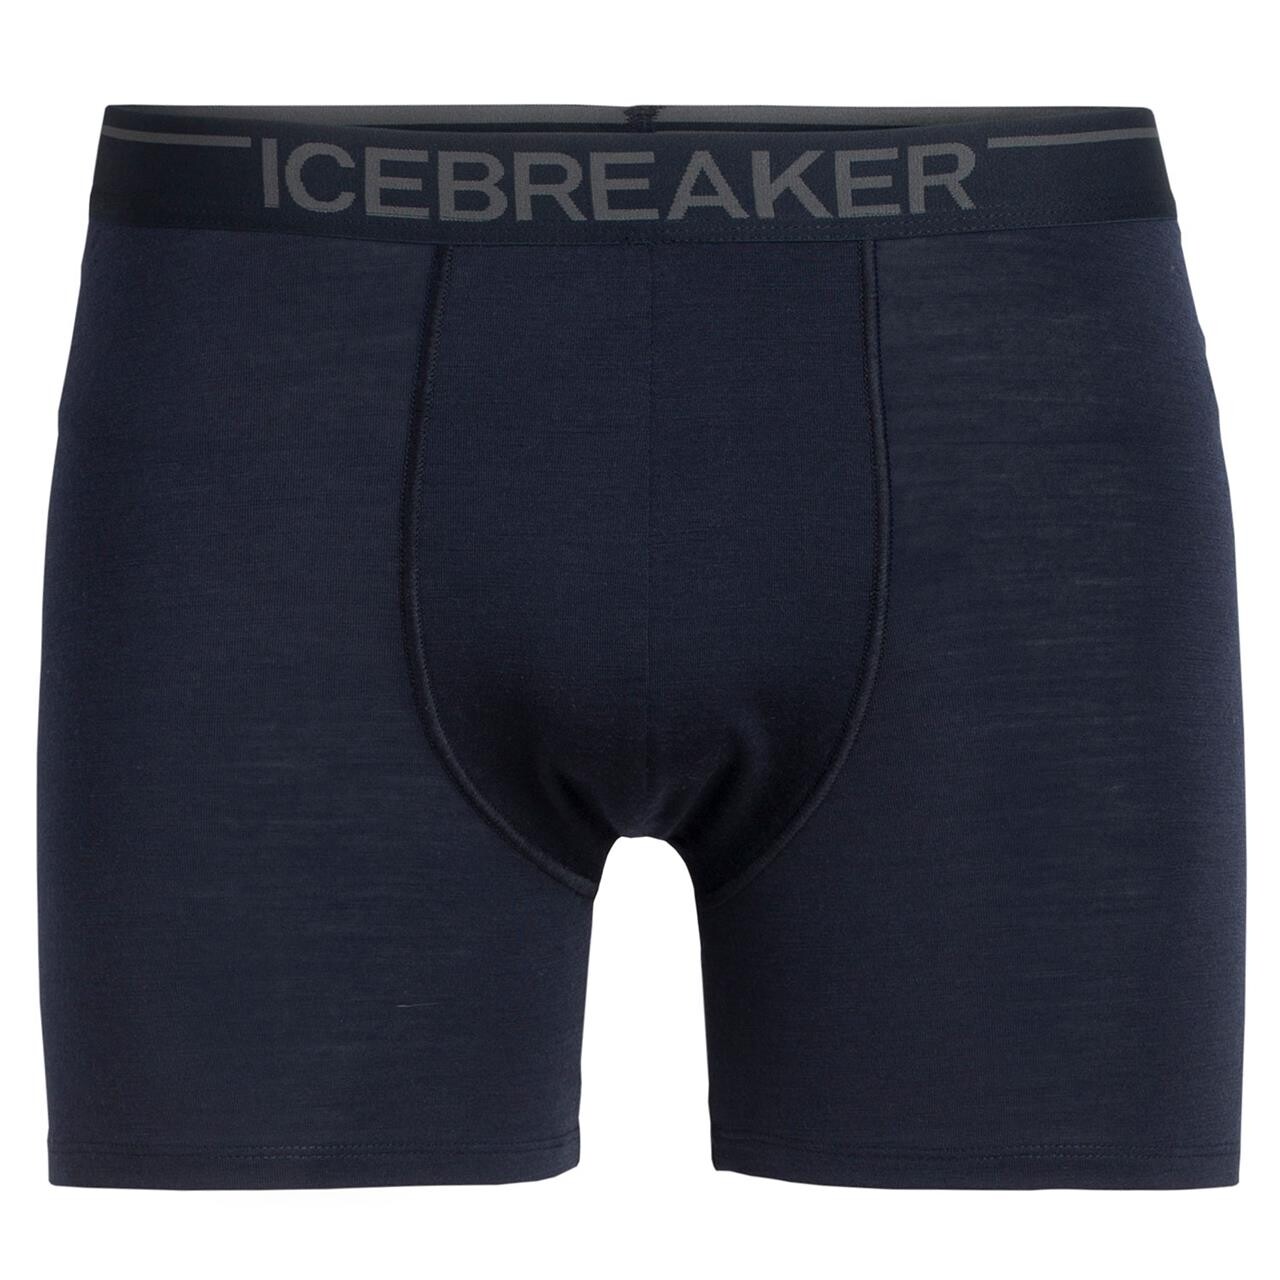 Se Icebreaker Mens Anatomica Boxers (Blå (MIDNIGHT NAVY) Large) hos Friluftsland.dk